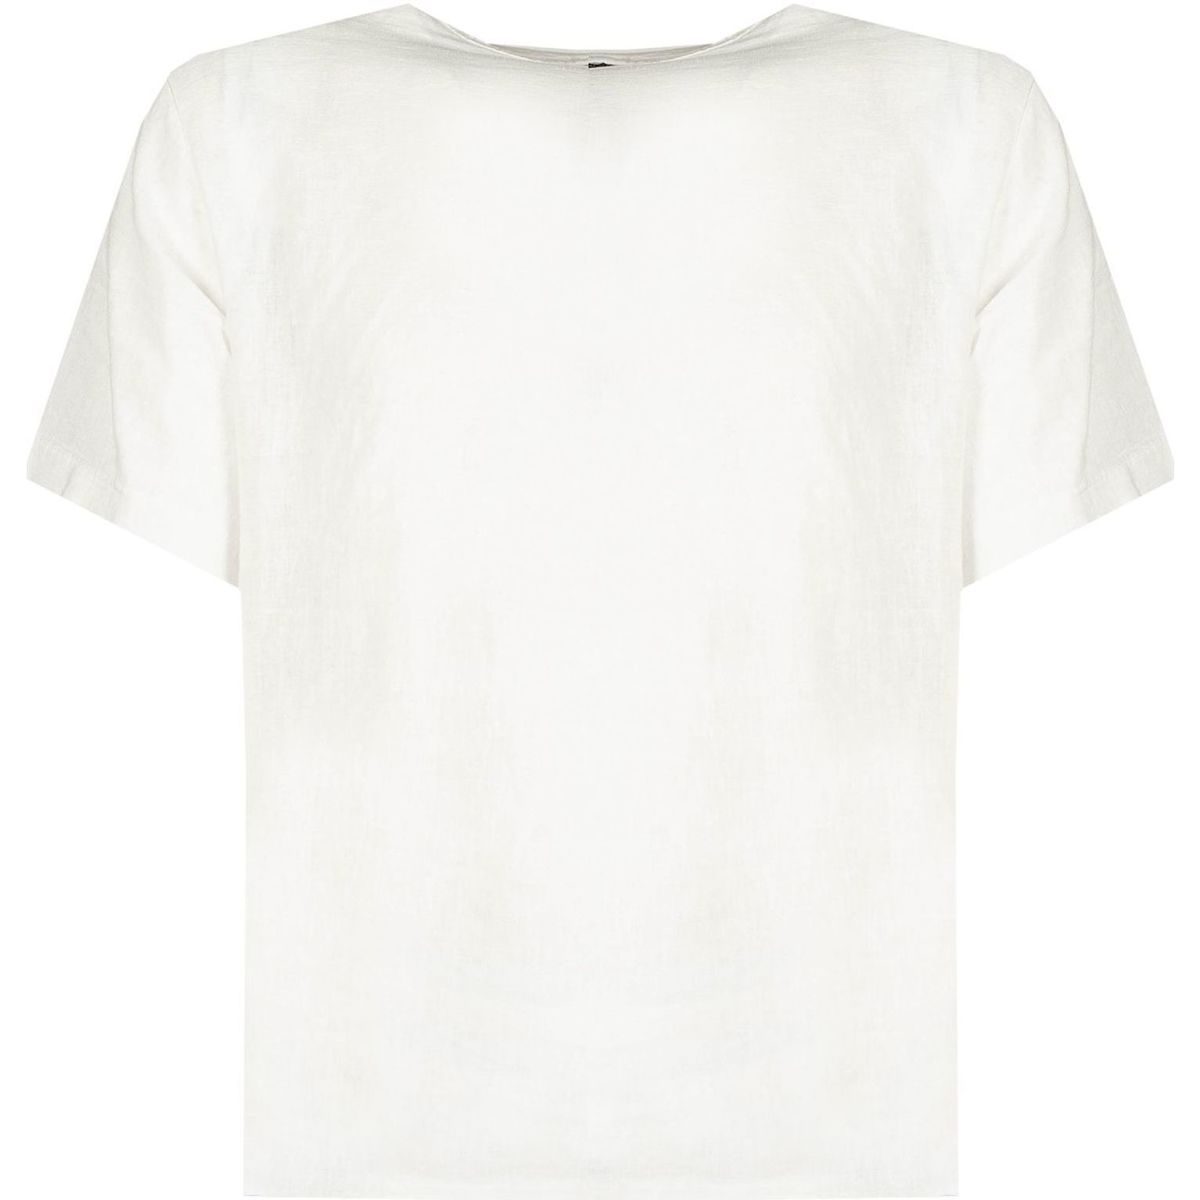 T-shirt με κοντά μανίκια Xagon Man P2208 2V 566B0